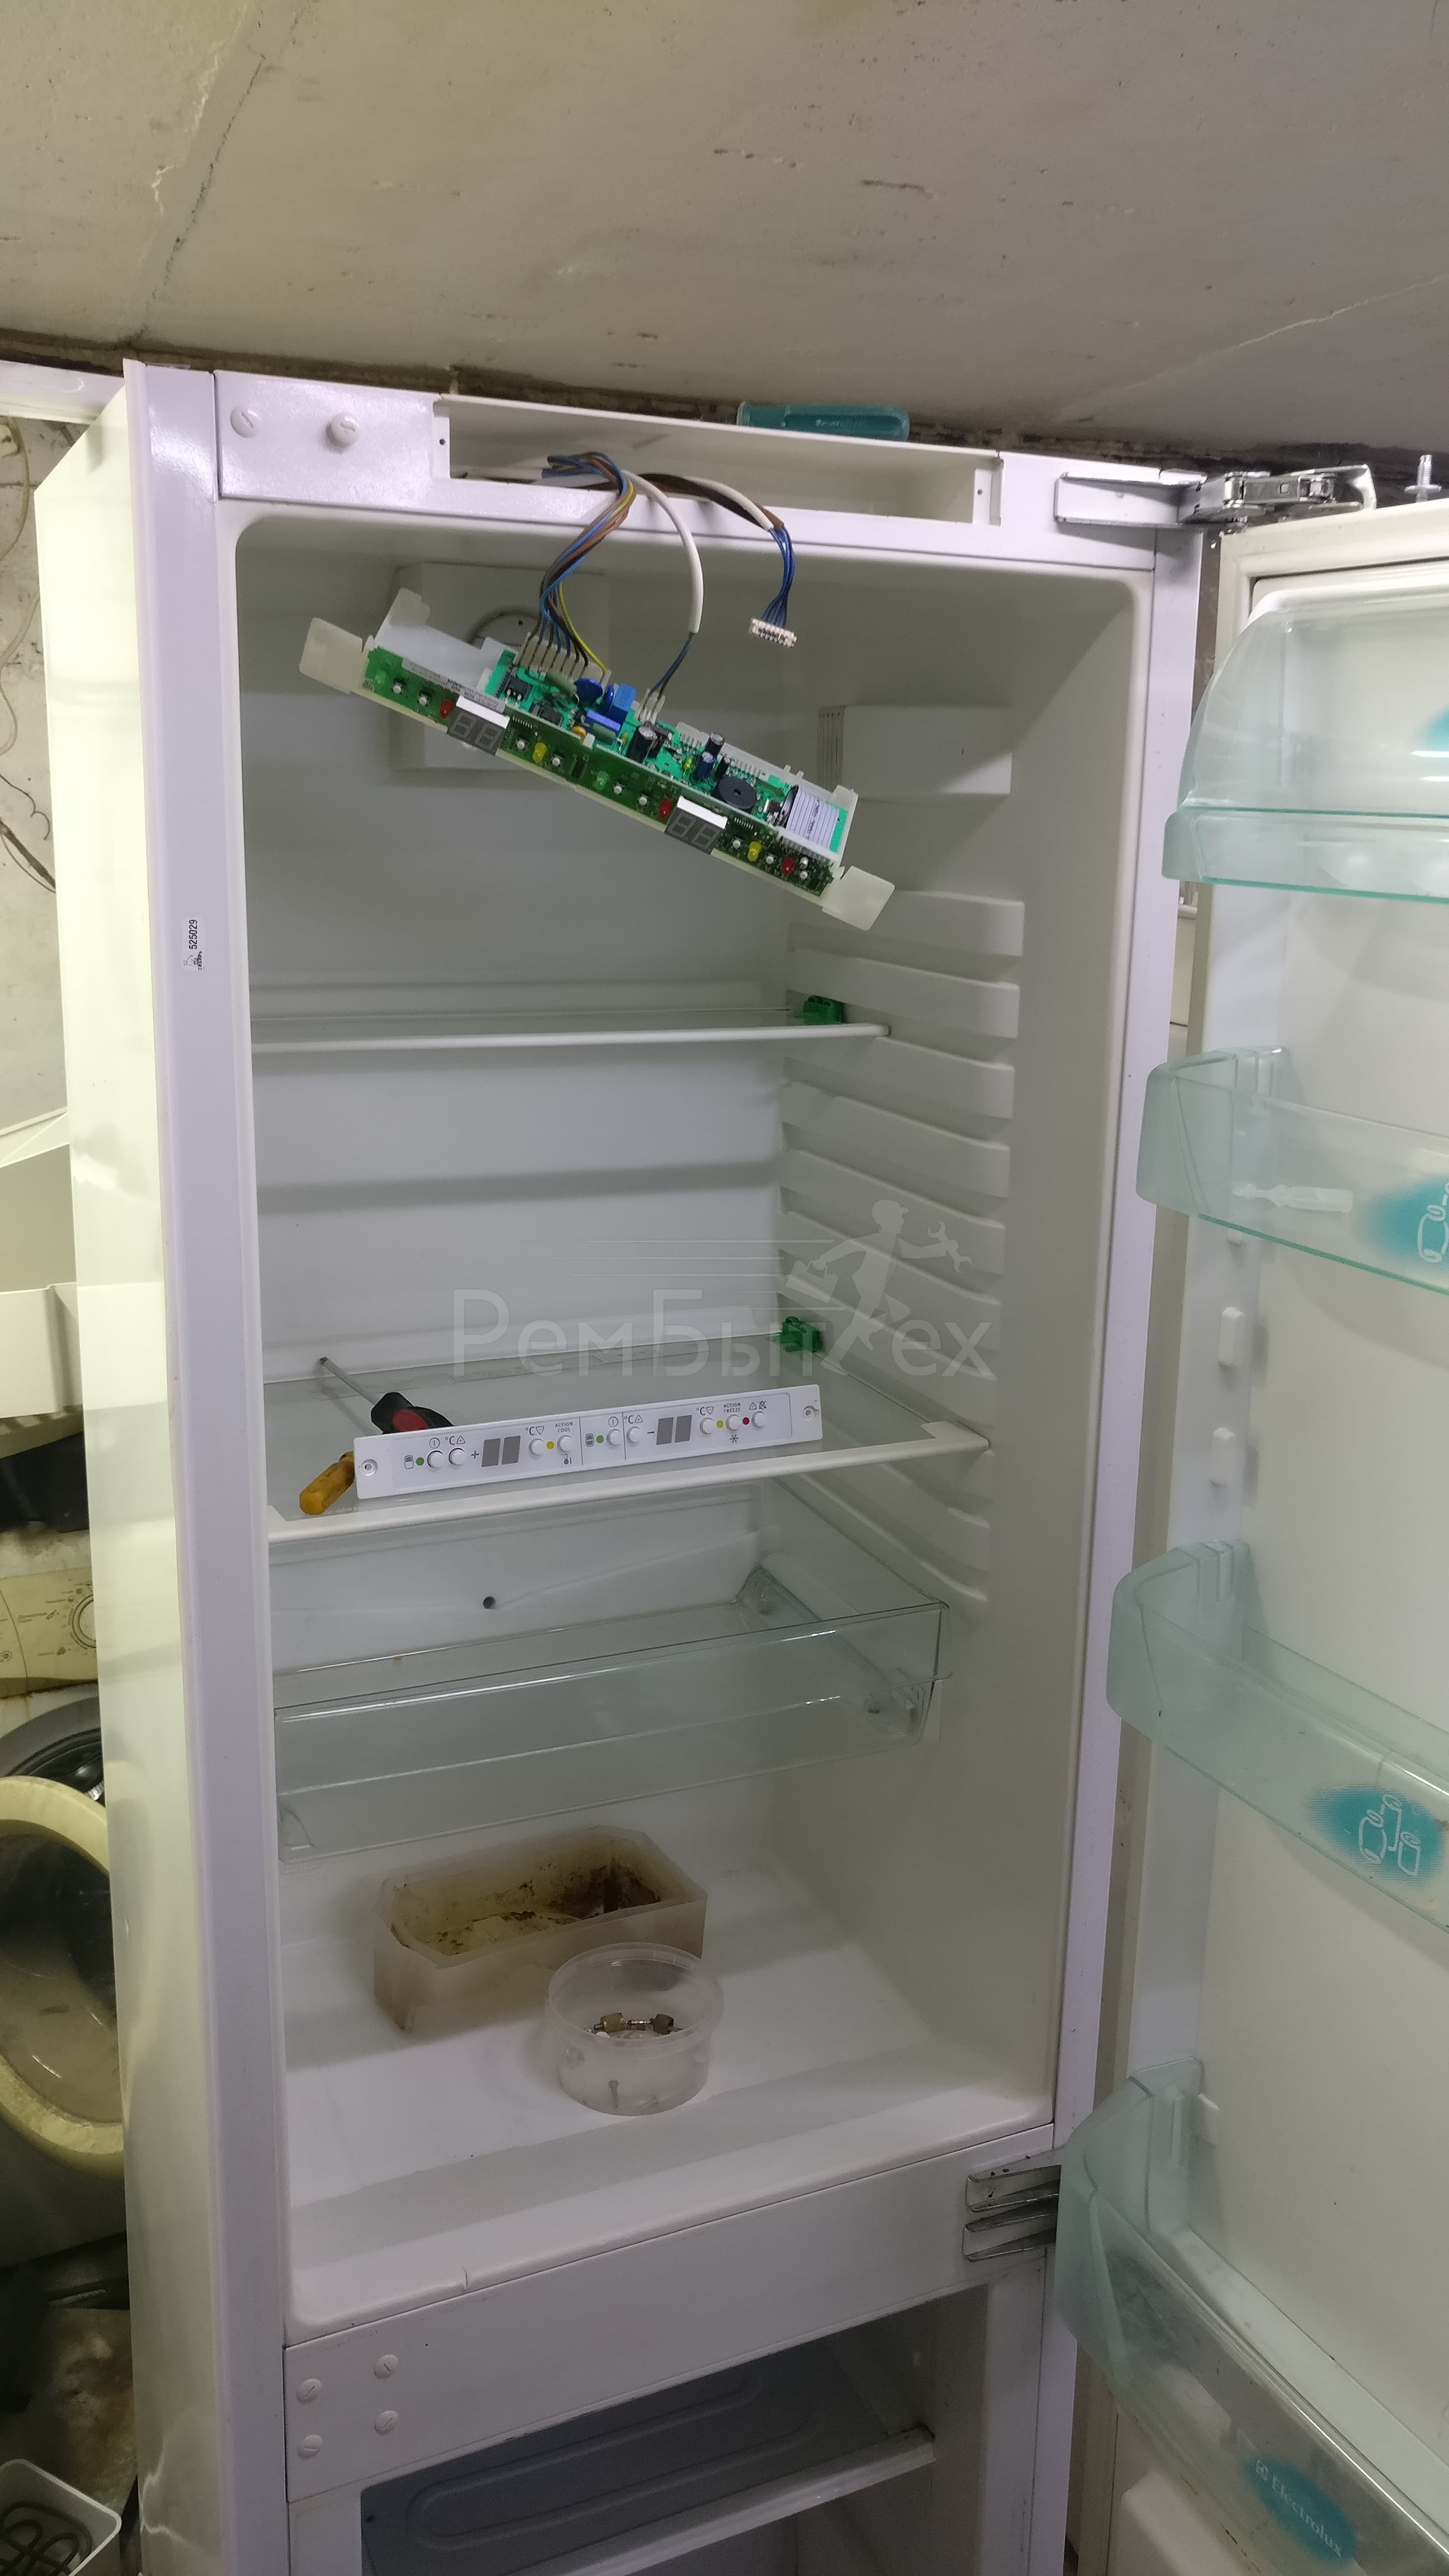 Электролюкс холодильник двухкомпрессорный датчики